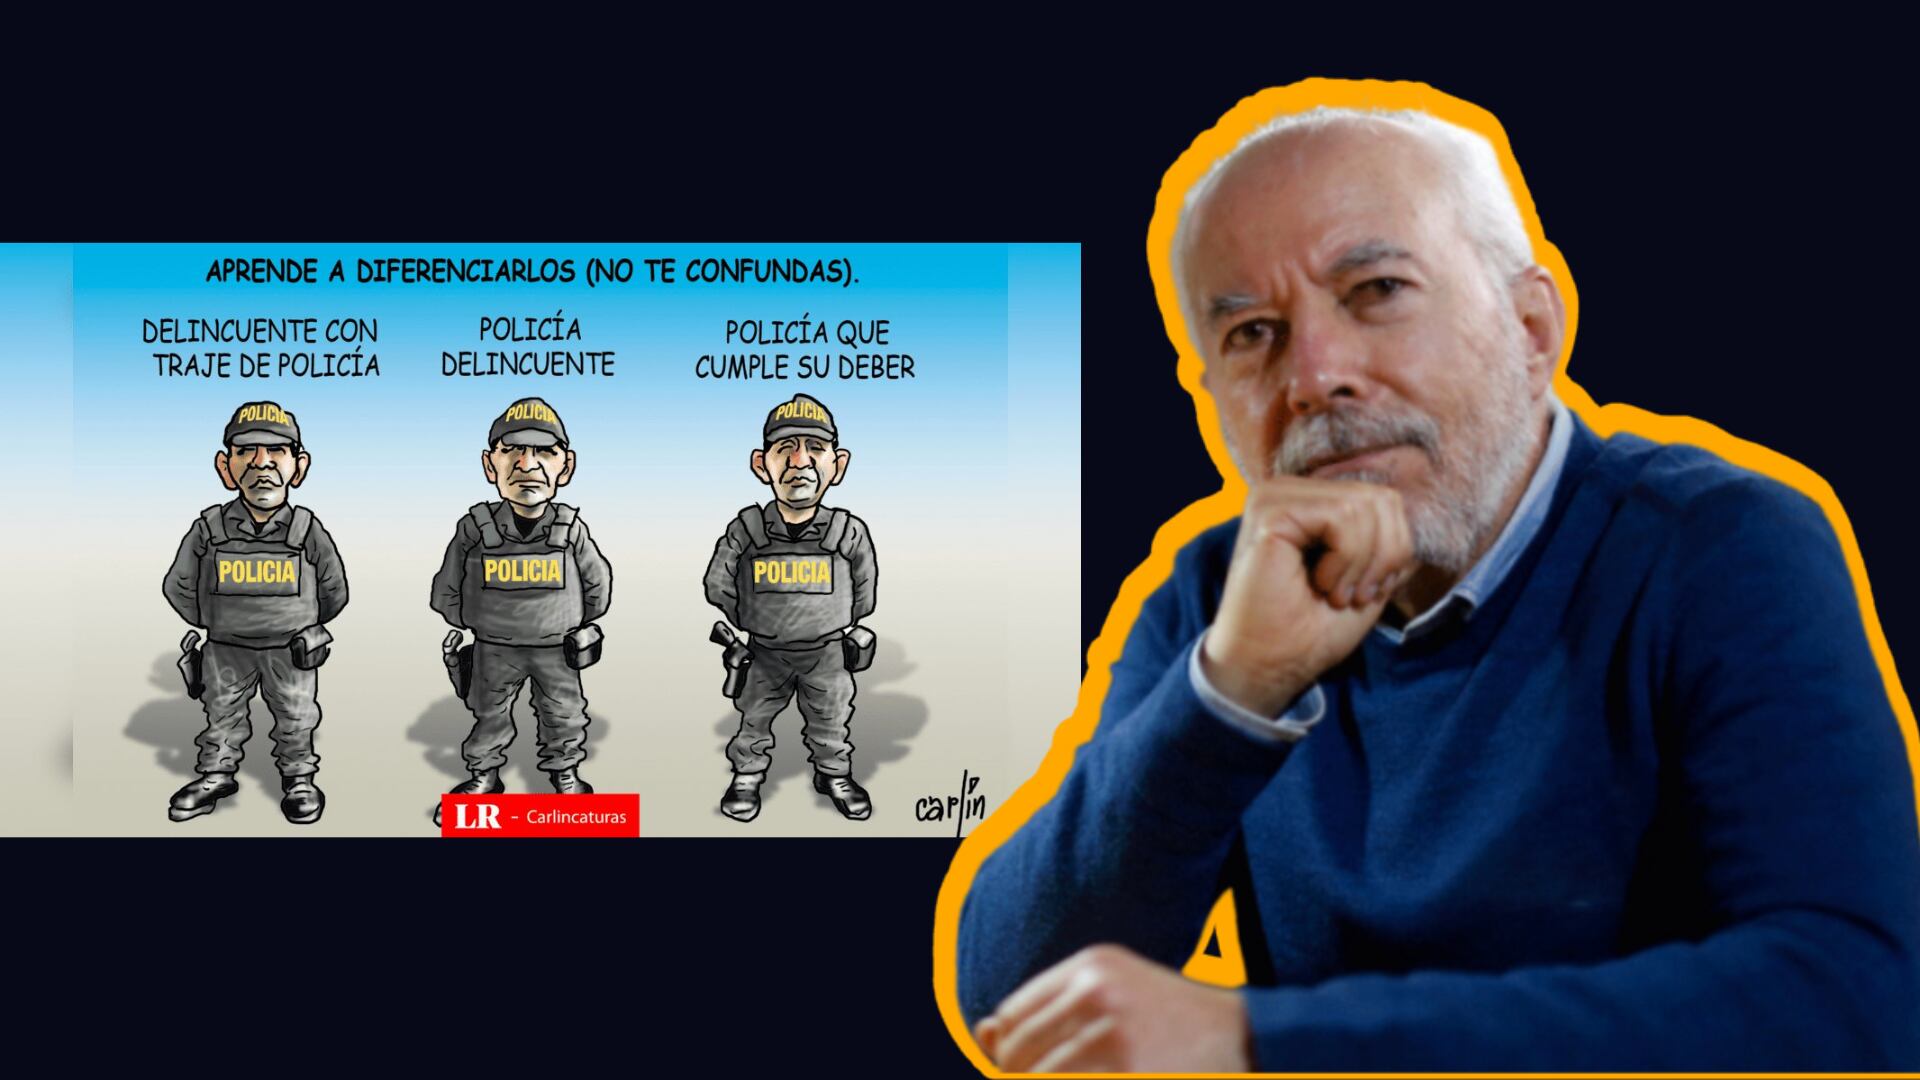 PNP amedrenta el derecho a la libertad de expresión de Carlos Tovar, 'Carlín'. Foto: composición